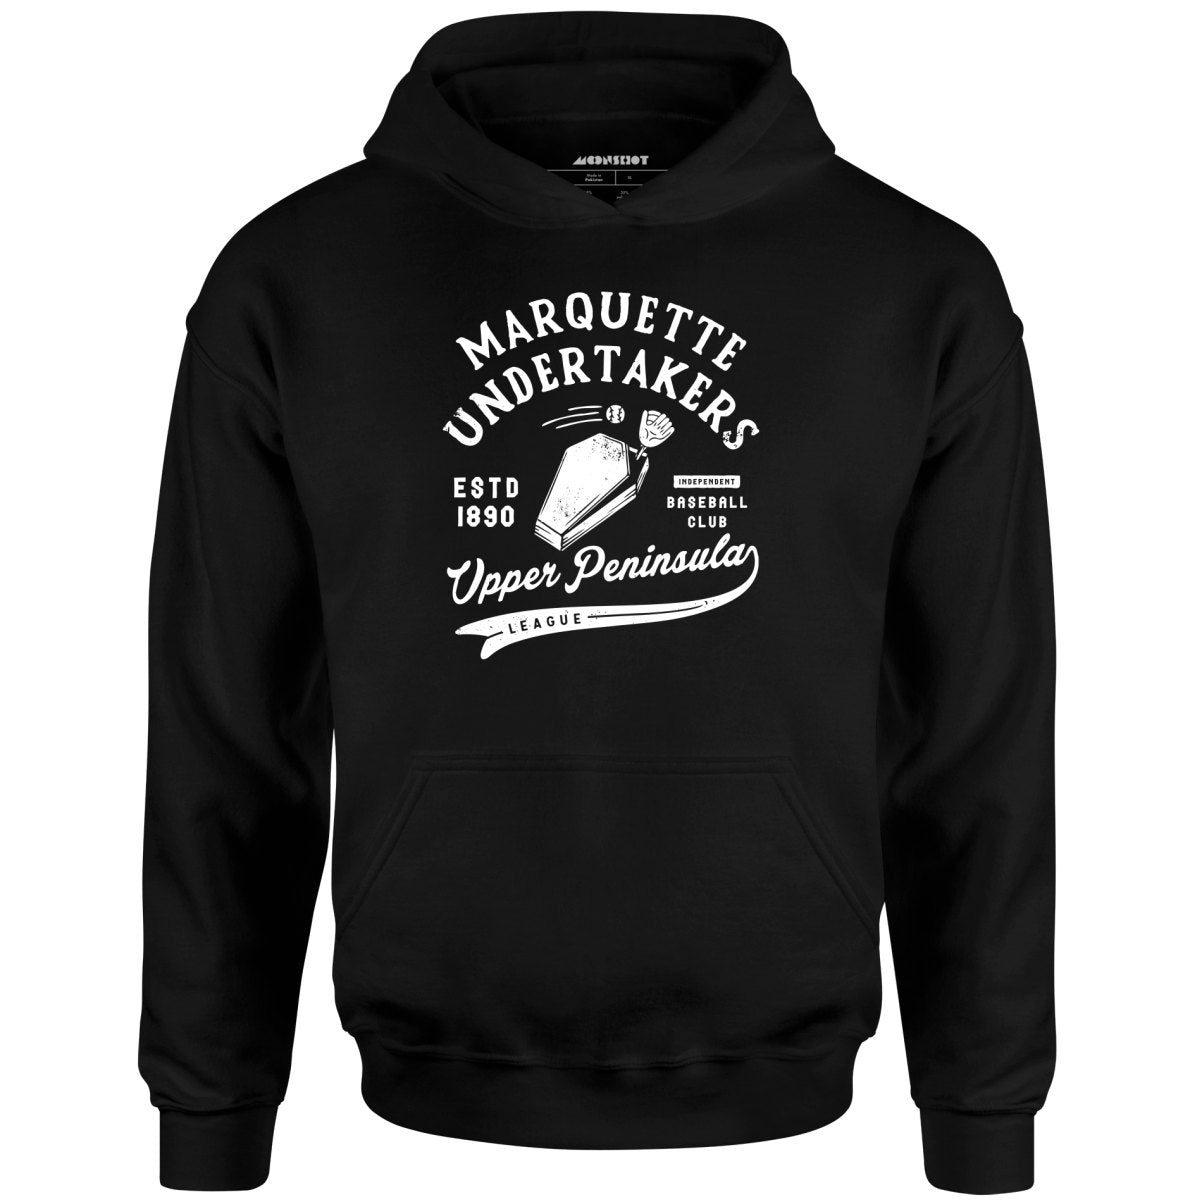 Marquette Undertakers - Michigan - Vintage Defunct Baseball Teams - Unisex Hoodie